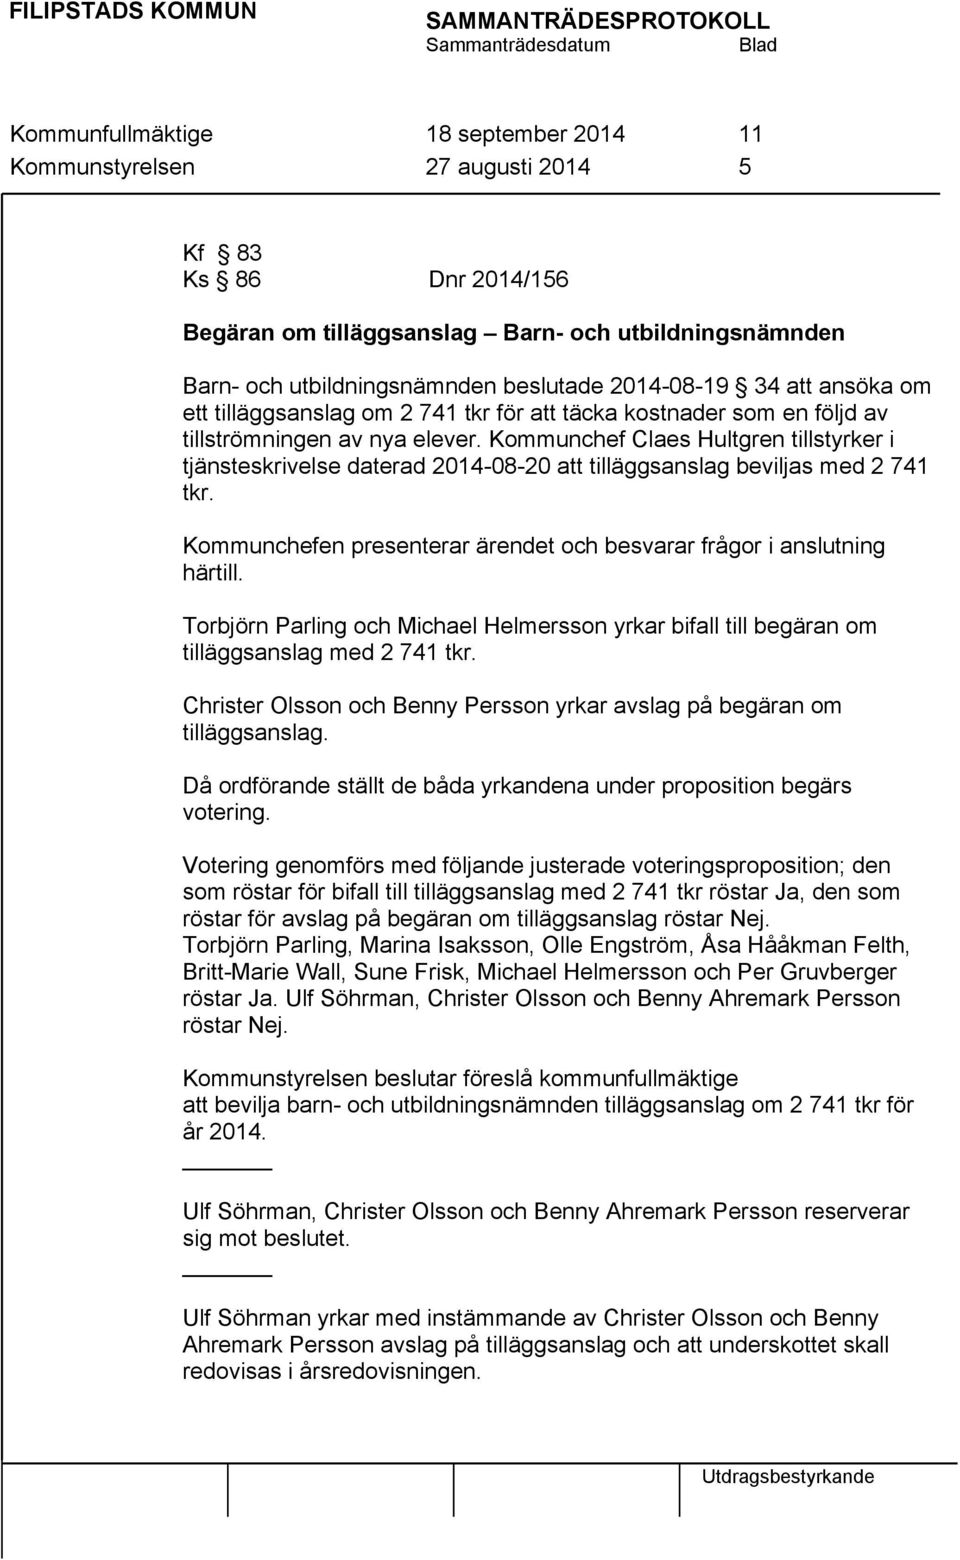 Kommunchef Claes Hultgren tillstyrker i tjänsteskrivelse daterad 2014-08-20 att tilläggsanslag beviljas med 2 741 tkr. Kommunchefen presenterar ärendet och besvarar frågor i anslutning härtill.